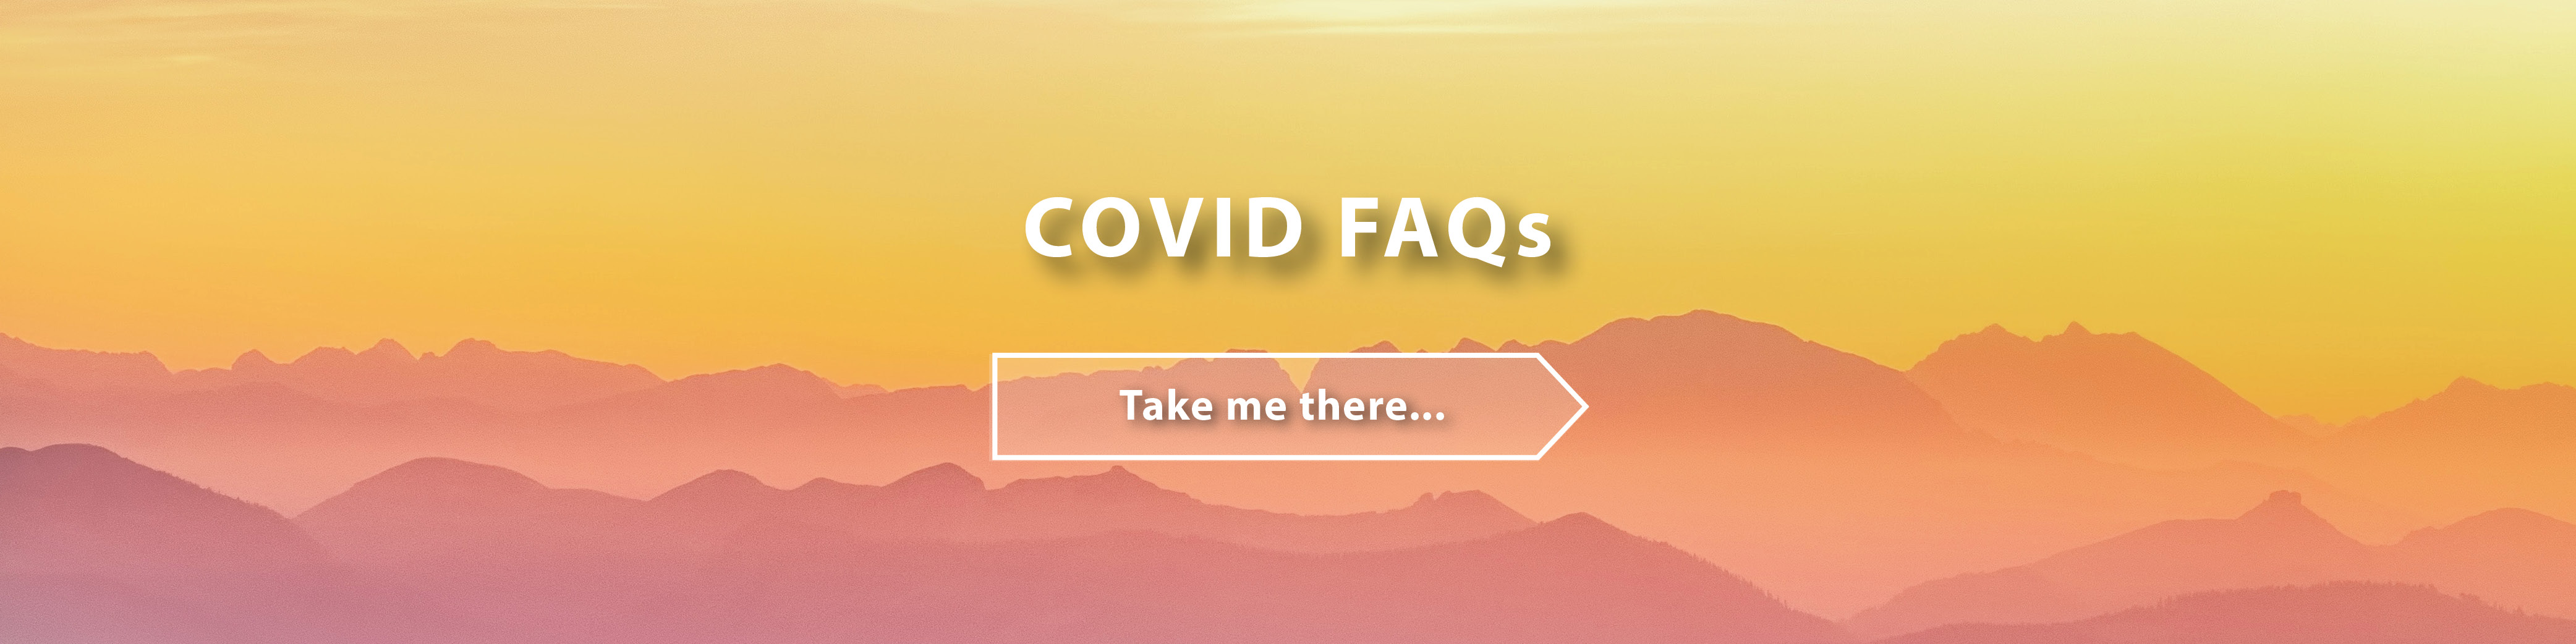 Covid FAQs